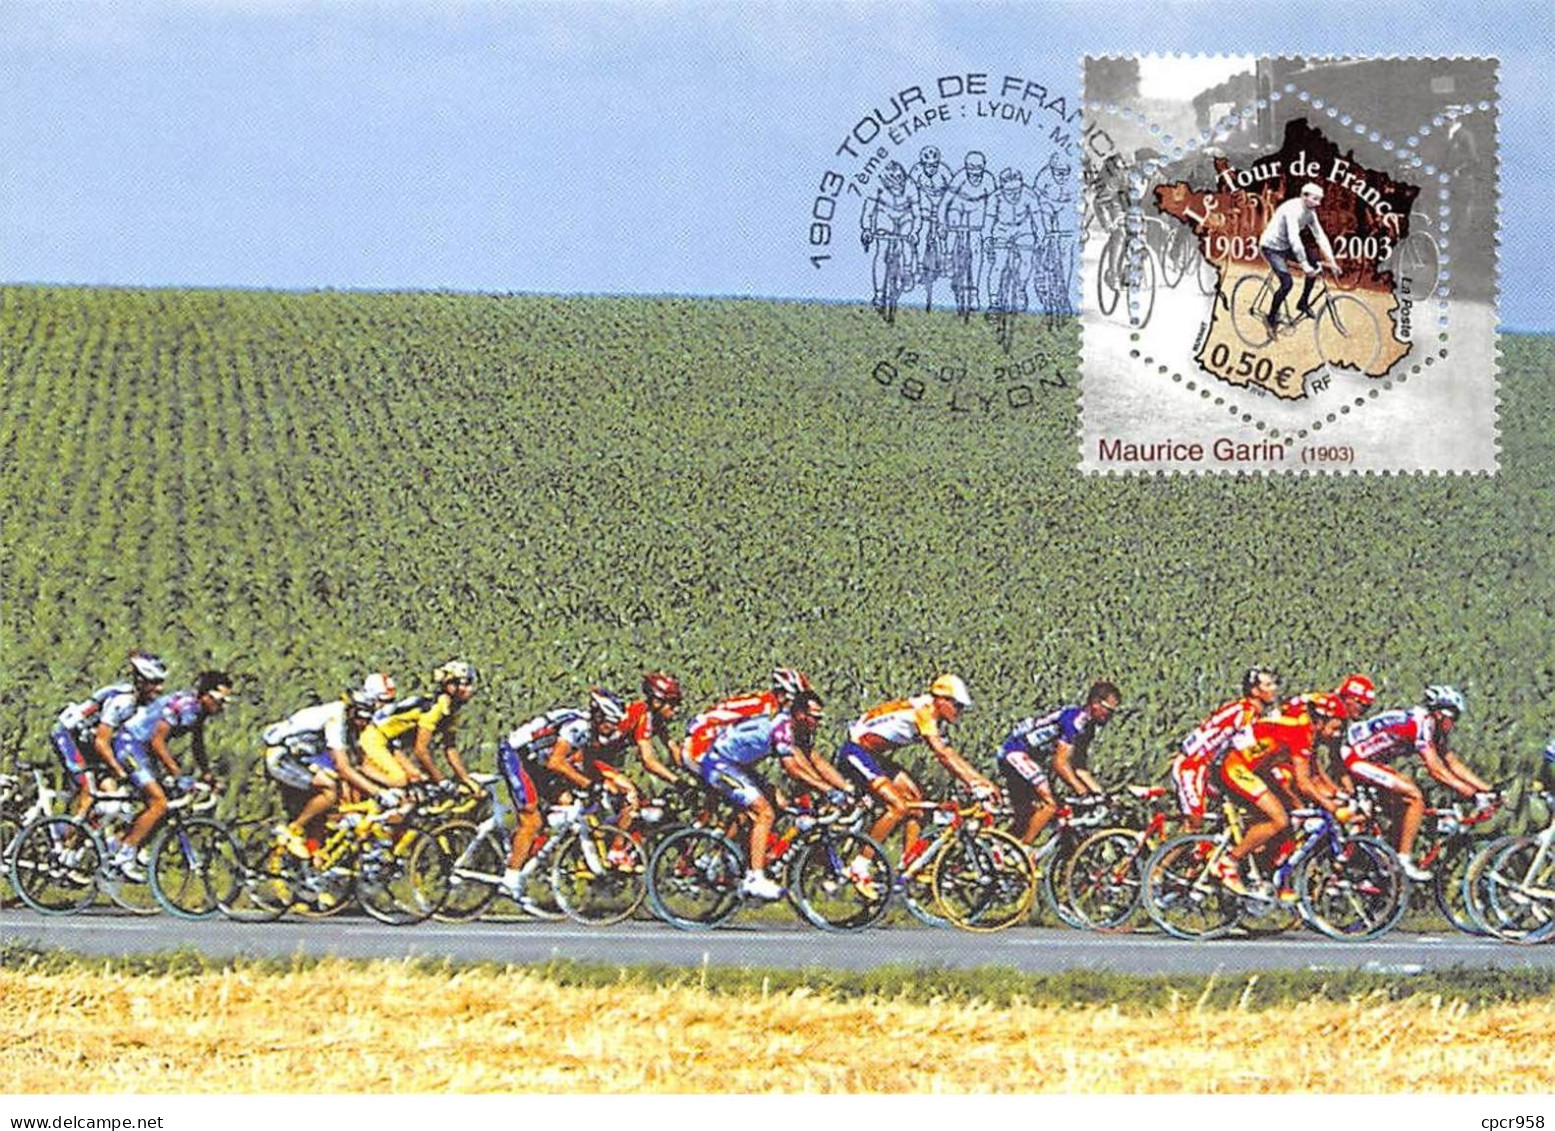 Carte Maximum - FRANCE - COR13256 - 12/07/2003 - Le Tour De France 2003 - 7eme étape - Cachet Lyon - 2000-2009